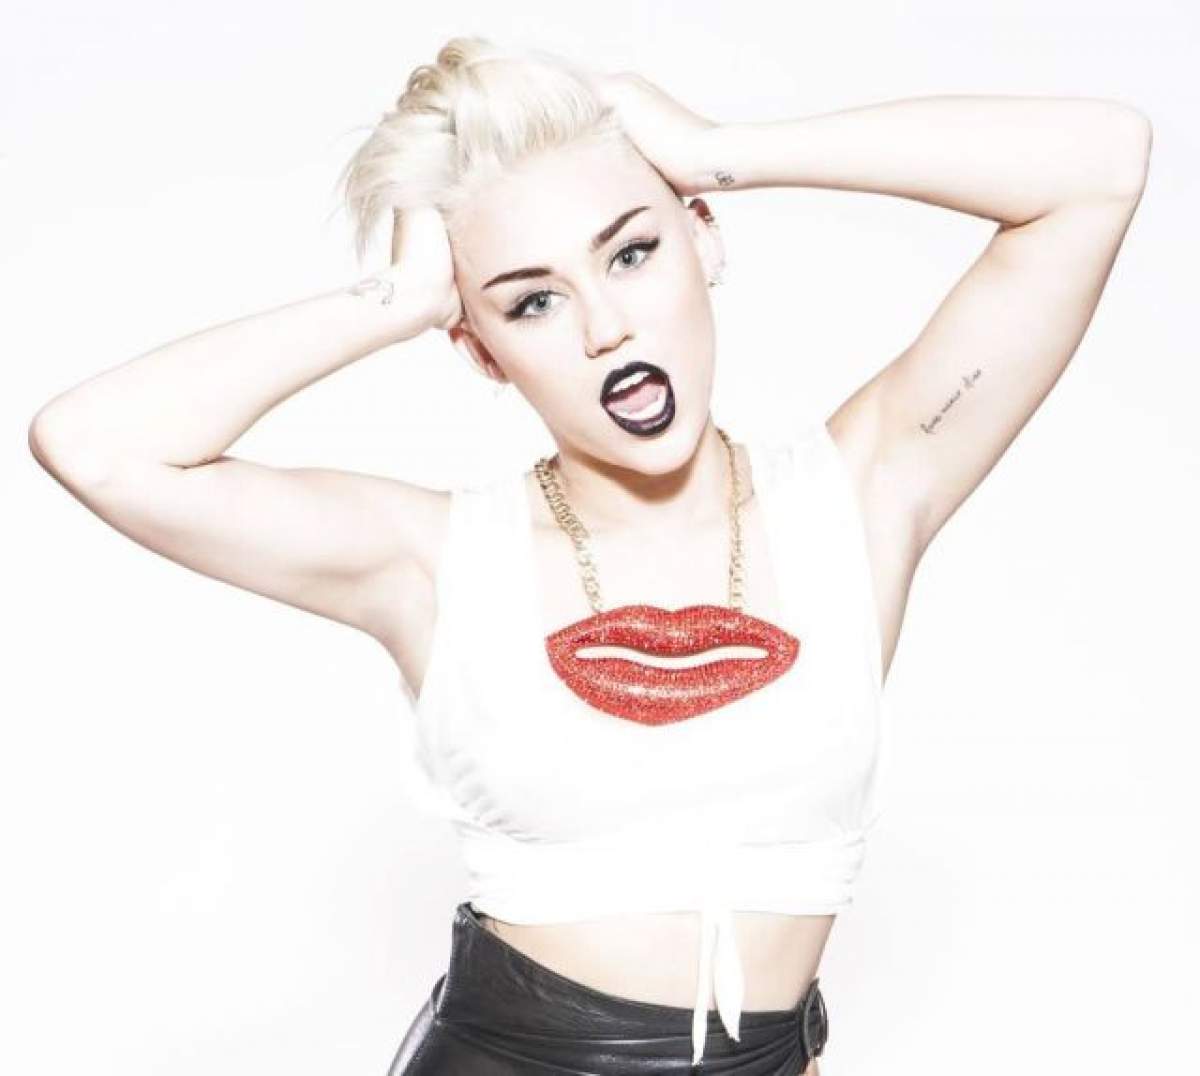 Miley Cyrus şochează din nou! S-a fotografiat mai mult dezbrăcată şi cu spume la gură. Fanii sunt disperaţi:  "Ar trebui să te respecţi mai mult"